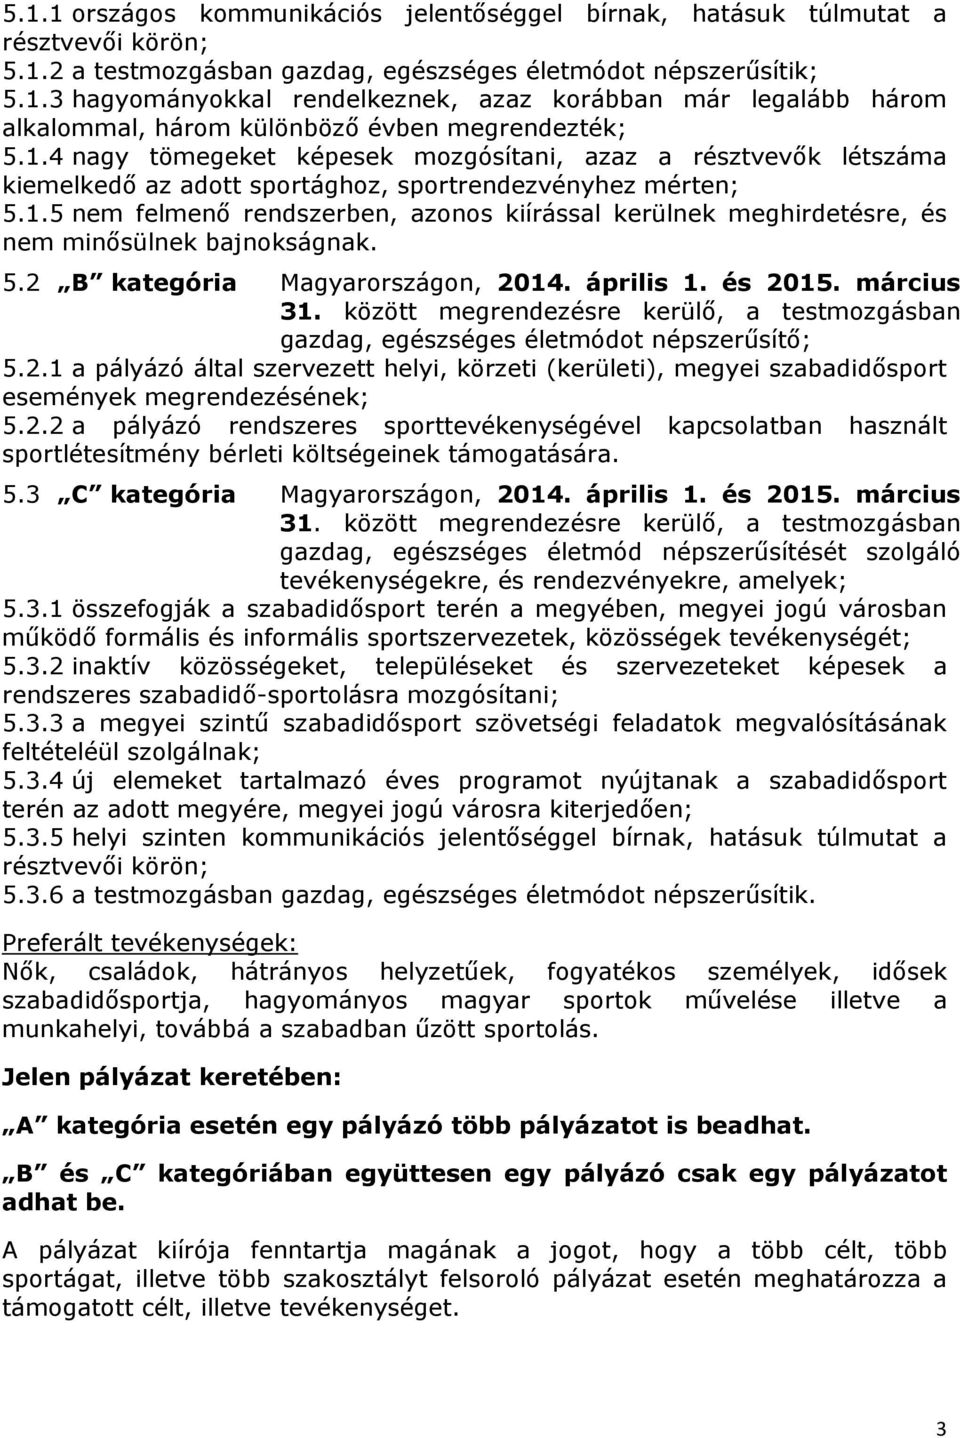 5.2 B kategória Magyarországon, 2014. április 1. és 2015. március 31. között megrendezésre kerülő, a testmozgásban gazdag, egészséges életmódot népszerűsítő; 5.2.1 a pályázó által szervezett helyi, körzeti (kerületi), megyei szabadidősport események megrendezésének; 5.